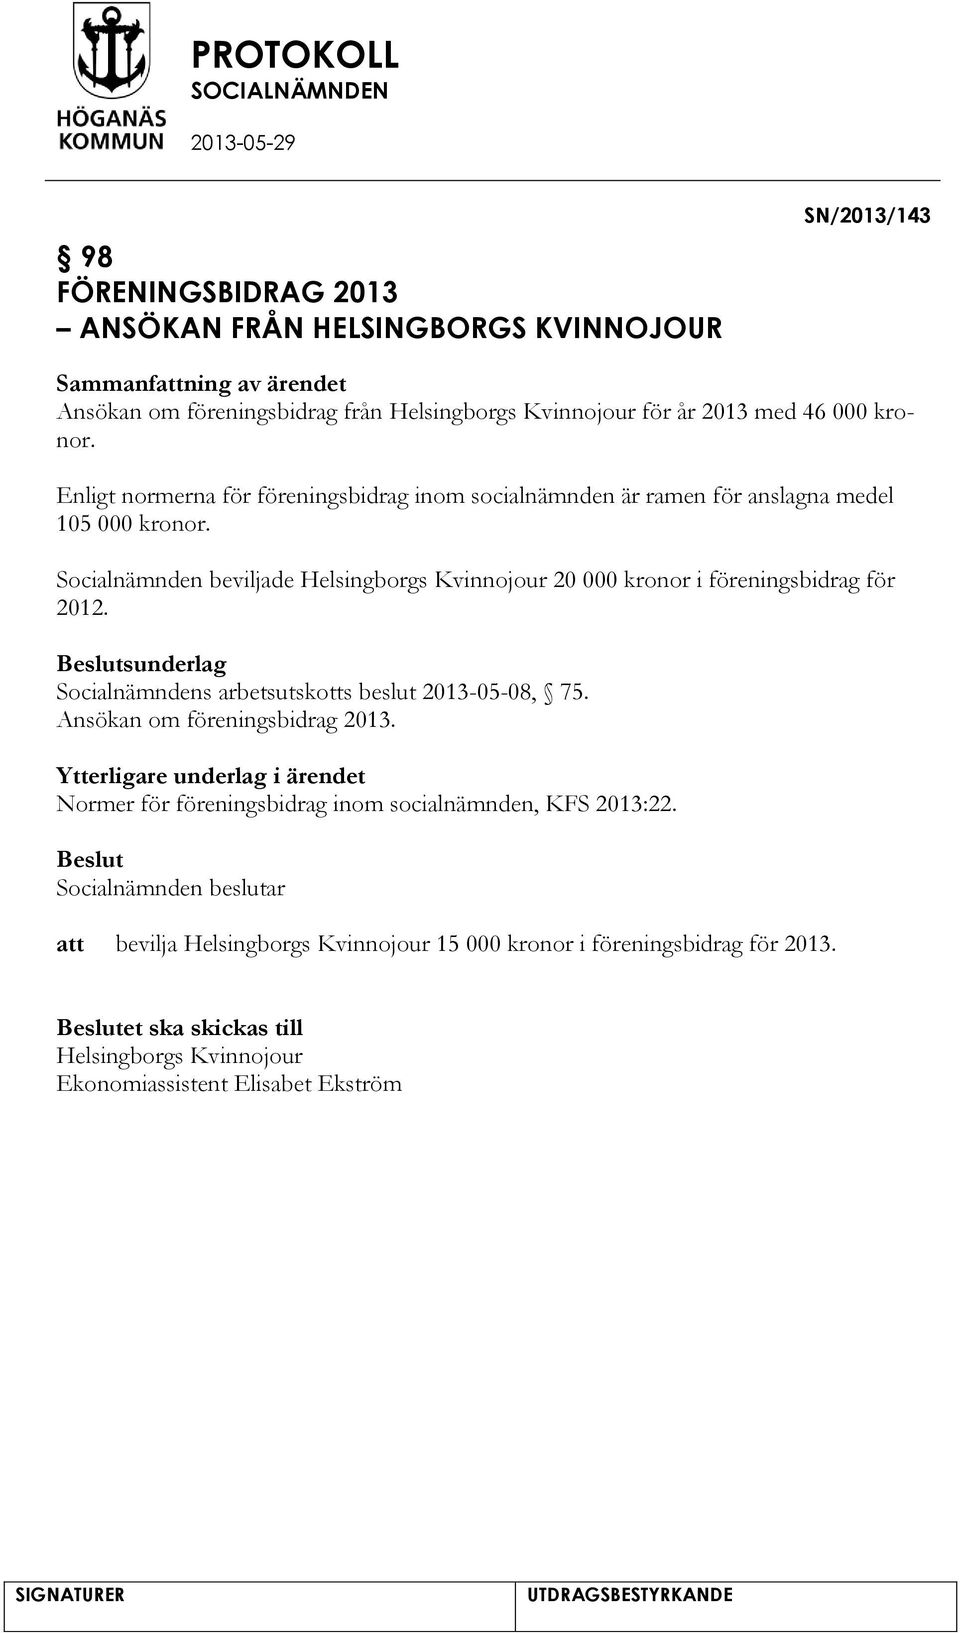 Socialnämnden beviljade Helsingborgs Kvinnojour 20 000 kronor i föreningsbidrag för 2012. sunderlag Socialnämndens arbetsutskotts beslut 2013-05-08, 75.